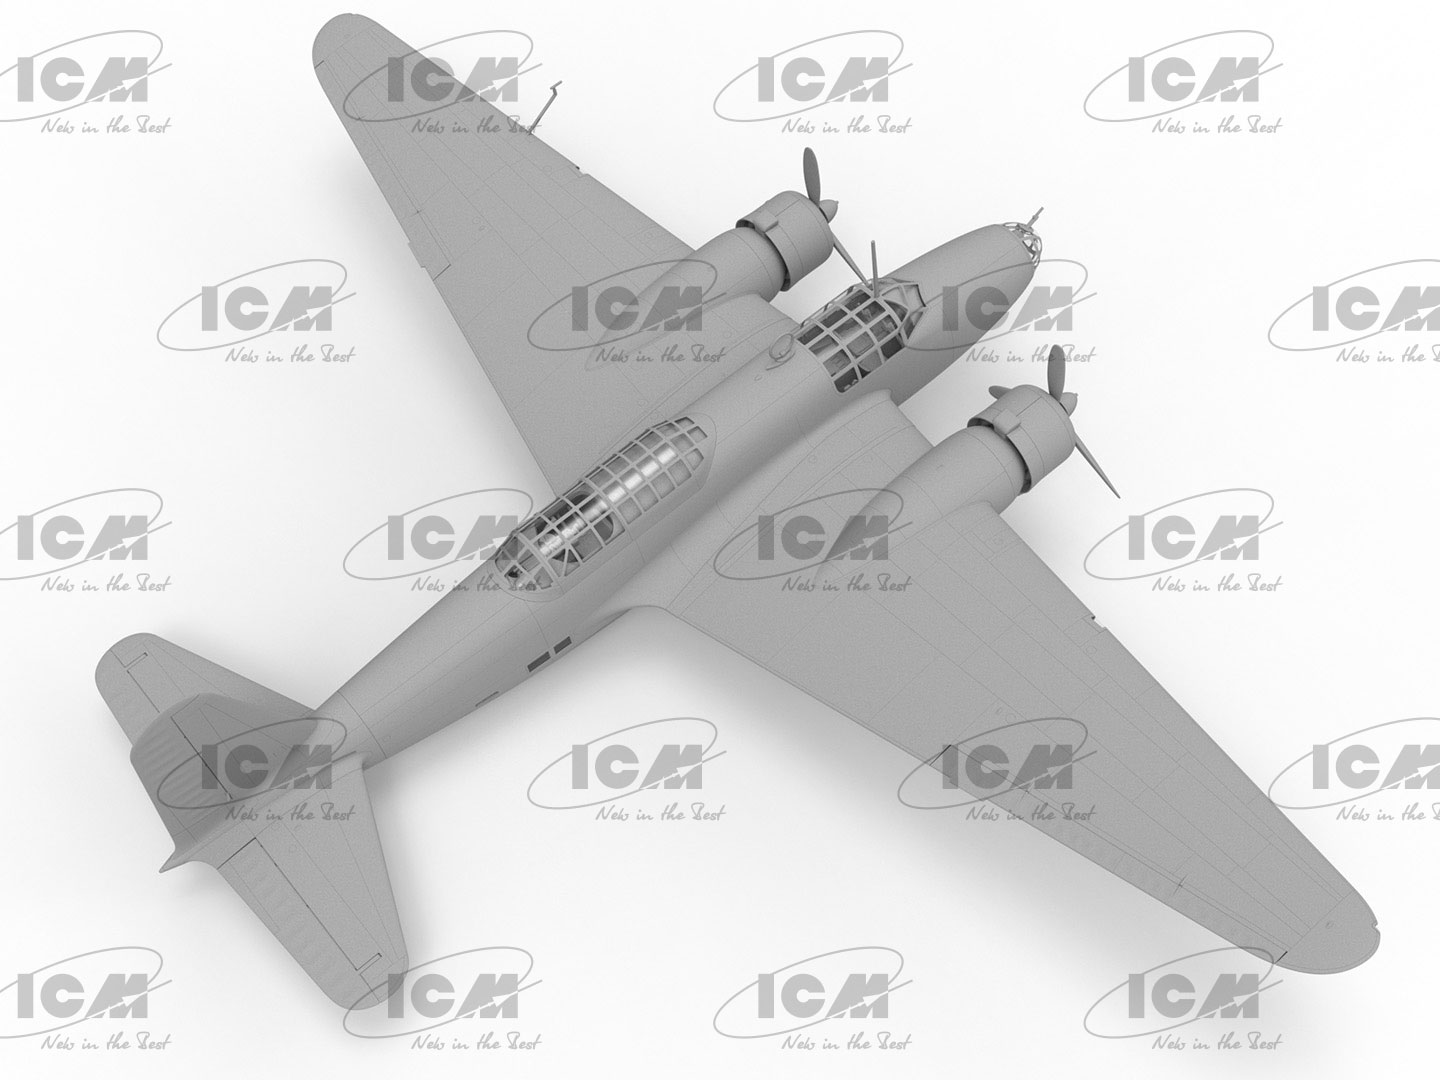 Ki-21_m1a-3